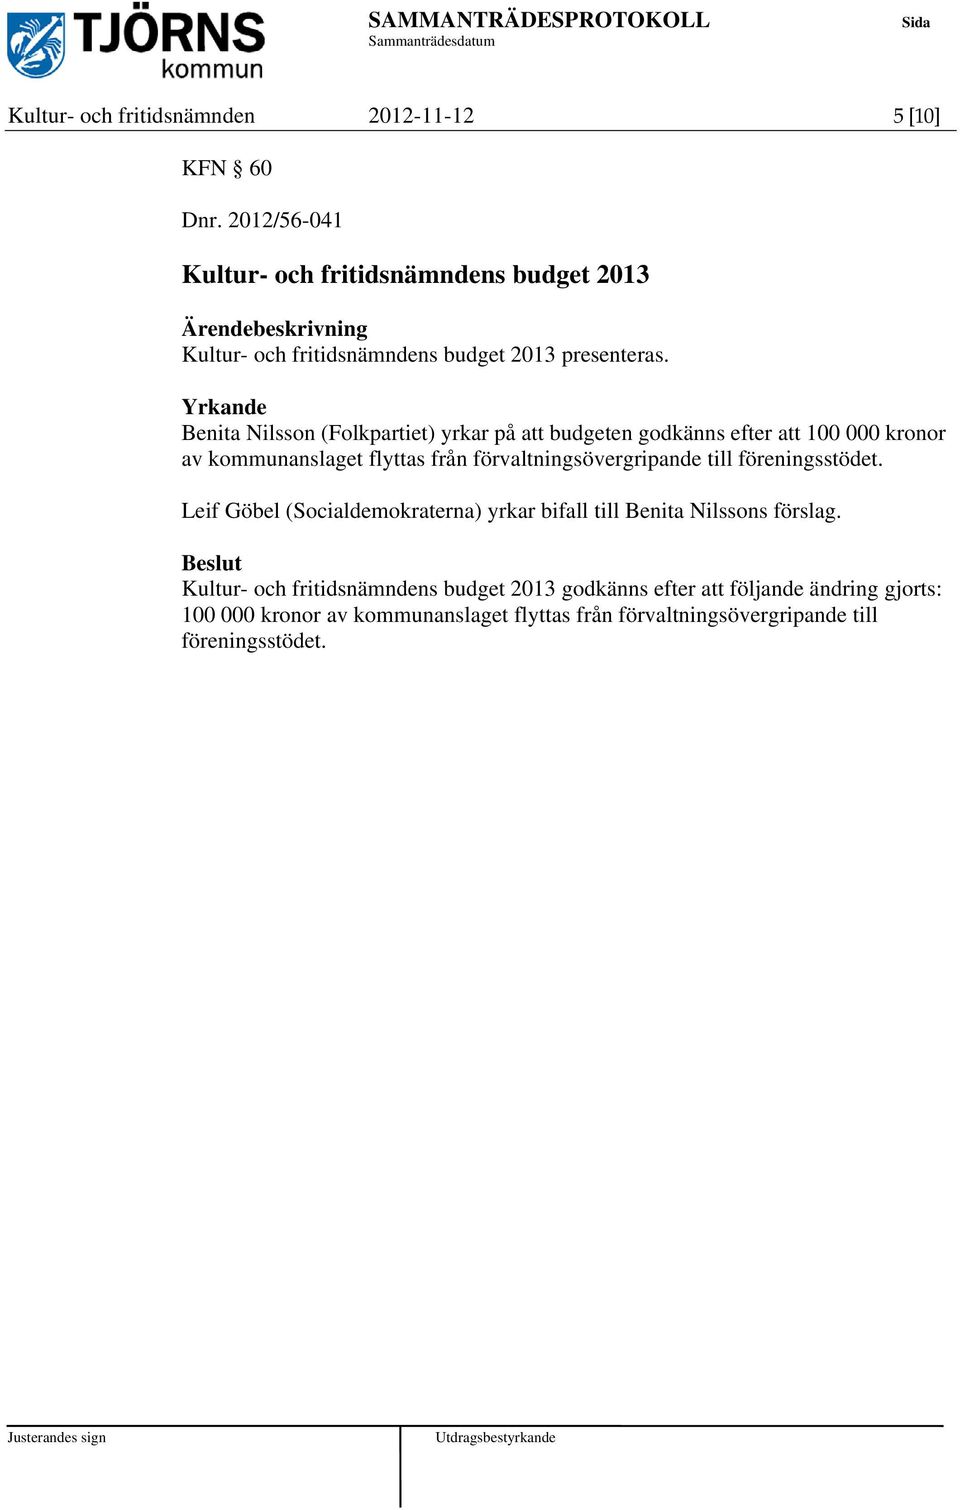 Yrkande Benita Nilsson (Folkpartiet) yrkar på att budgeten godkänns efter att 100 000 kronor av kommunanslaget flyttas från